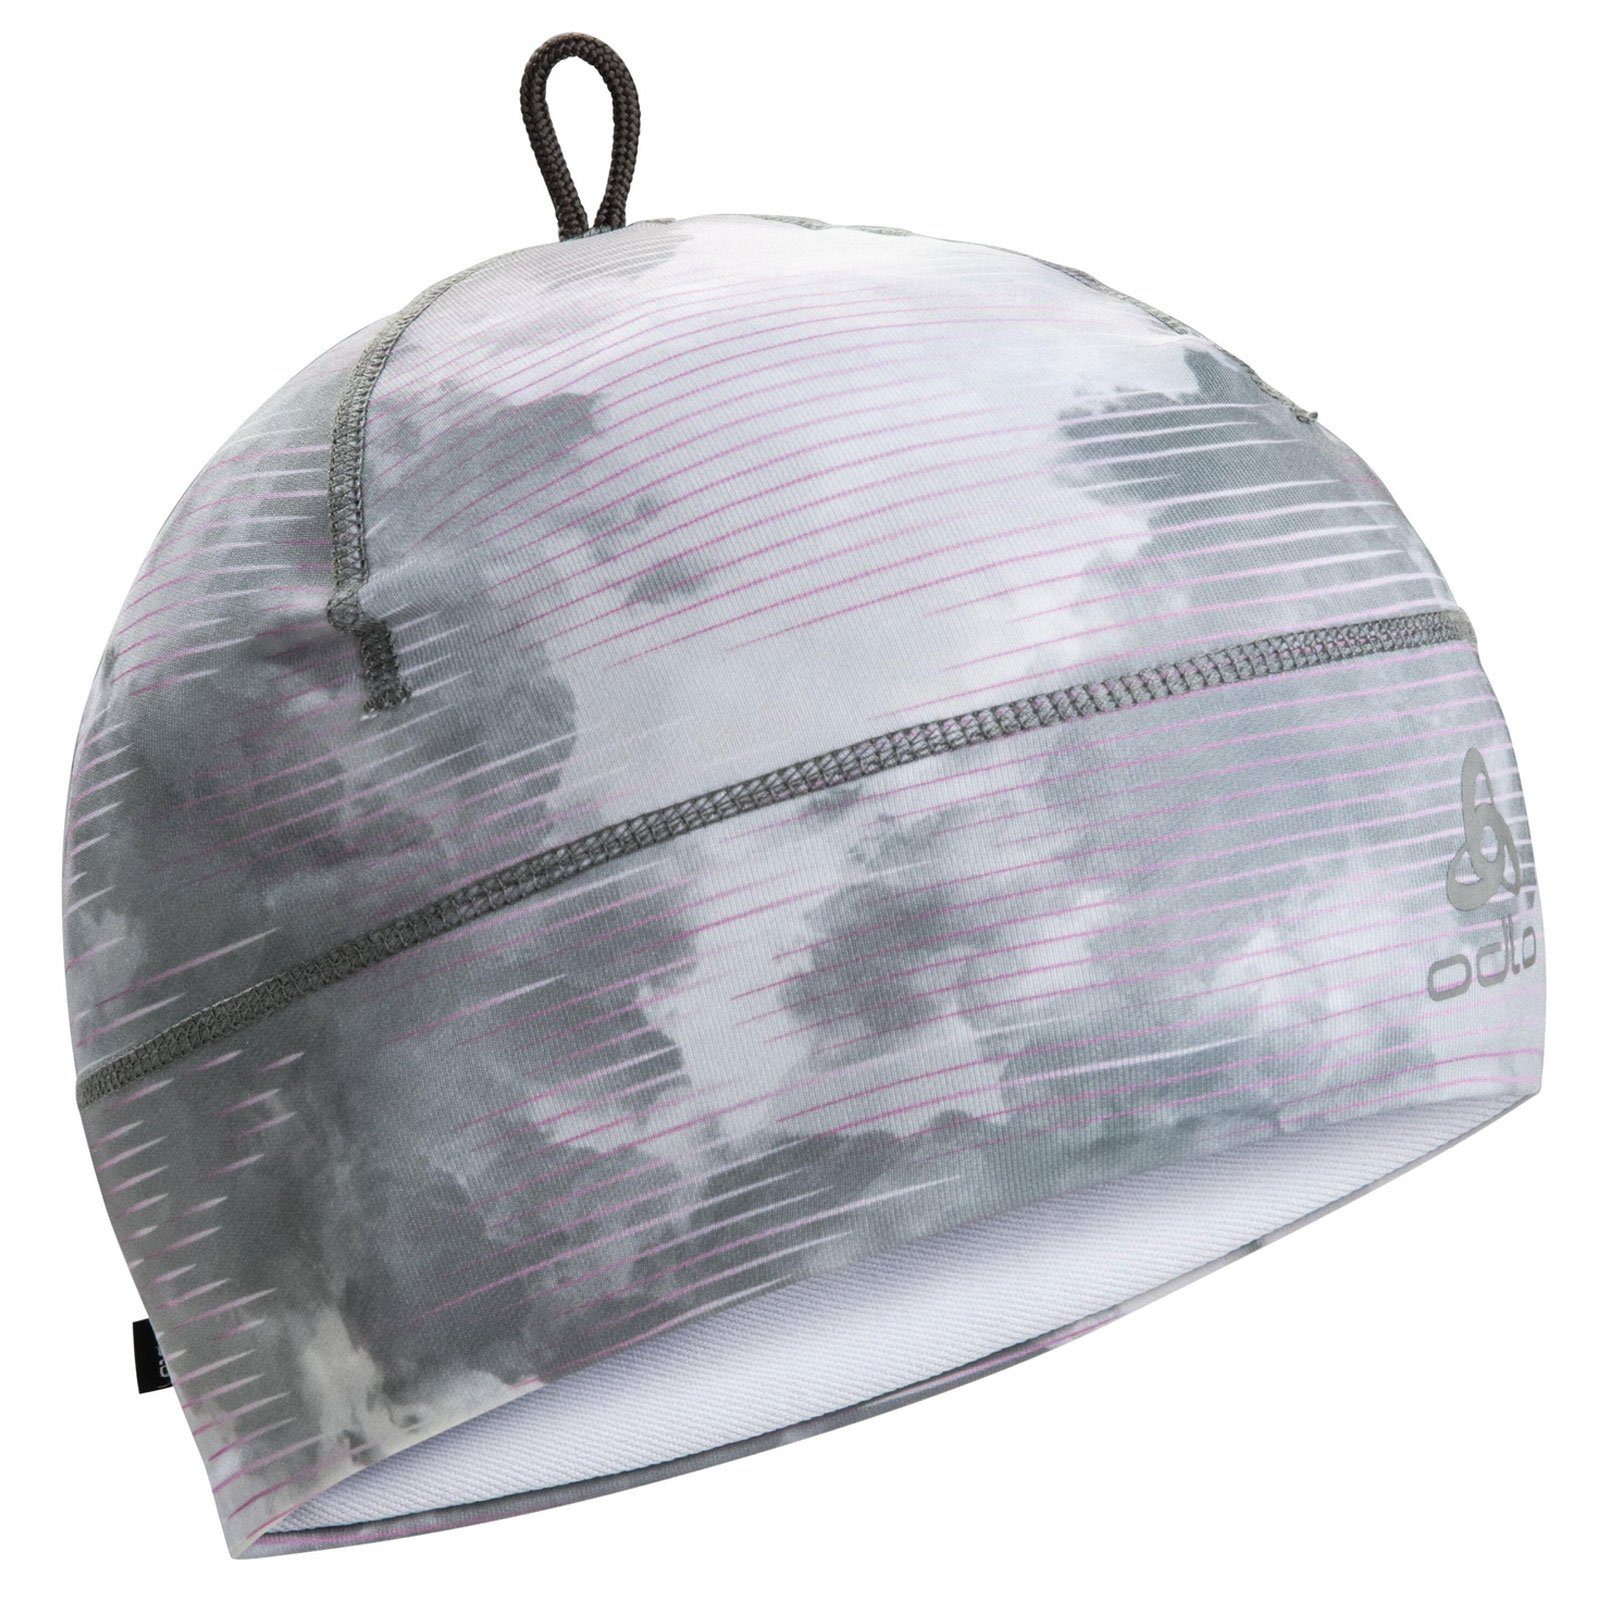 Odlo Beanie POLYKNIT Warm Eco Print Beanie grey festival fuchsia Diese Mütze schützt deinen Kopf vor kühlen Temperaturen.